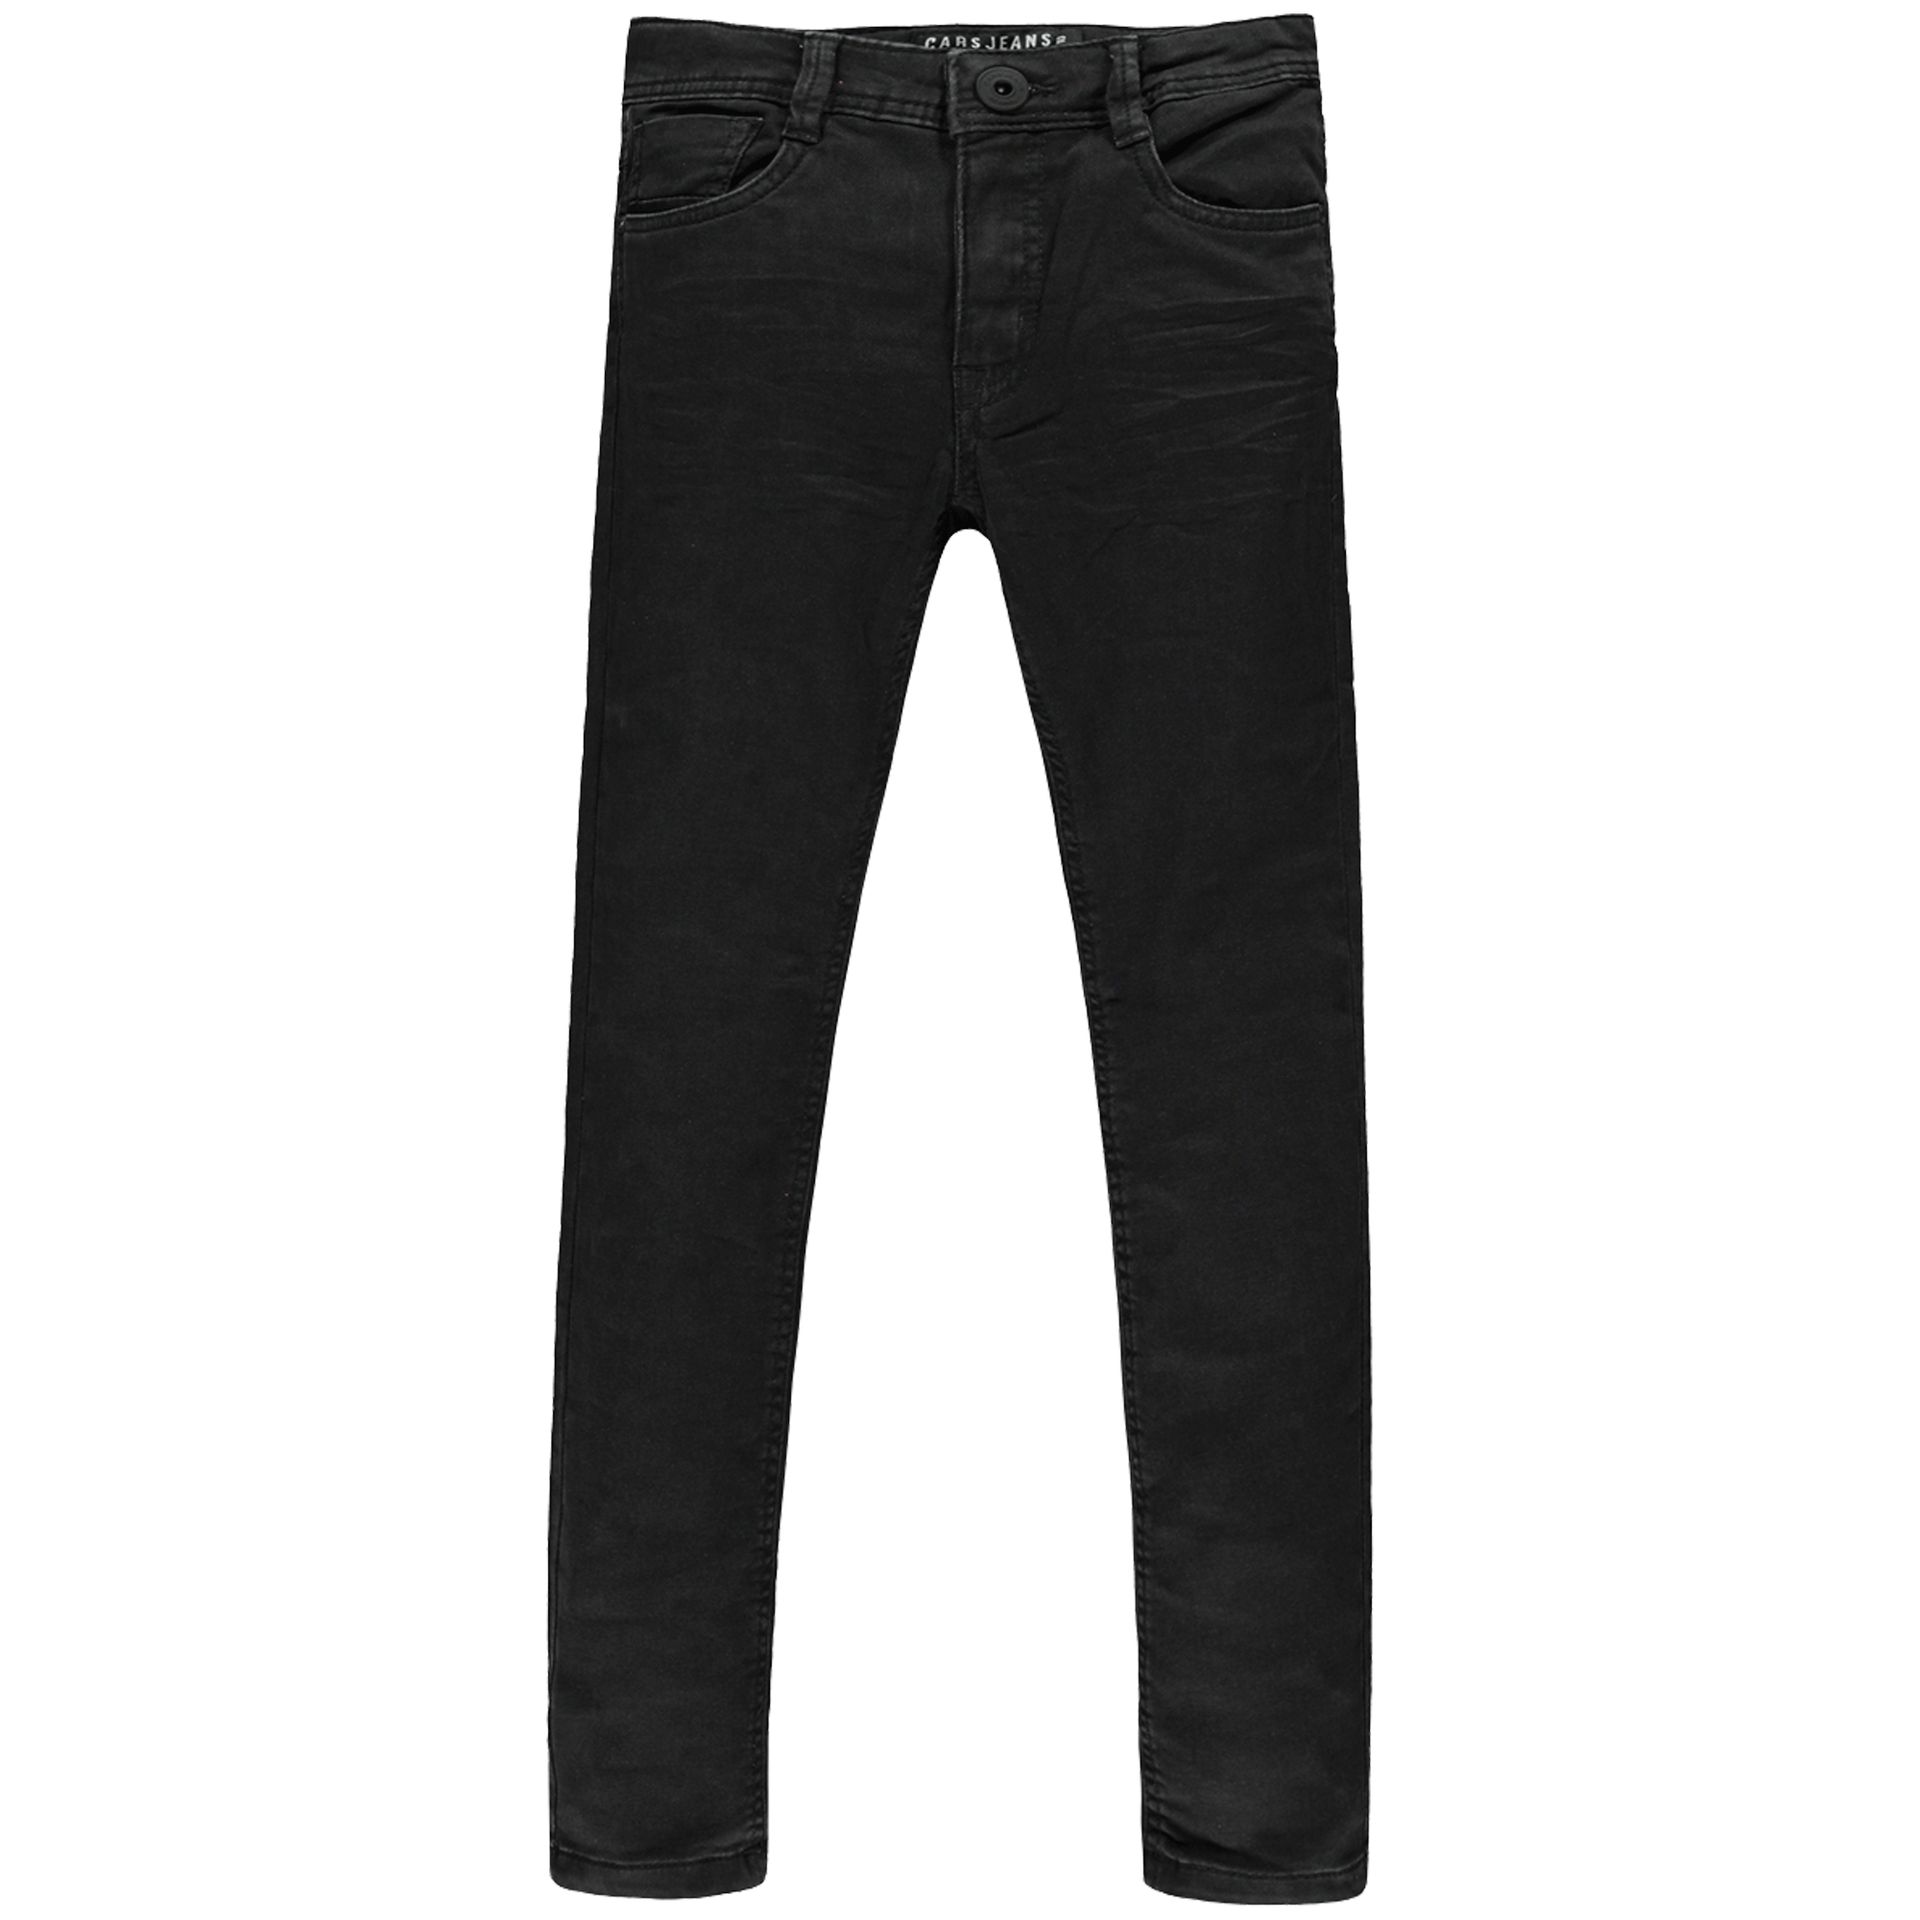 Cars jeans Jeans Prinze Jr. Regular fit 41 black used 00103842-EKA26008400000014